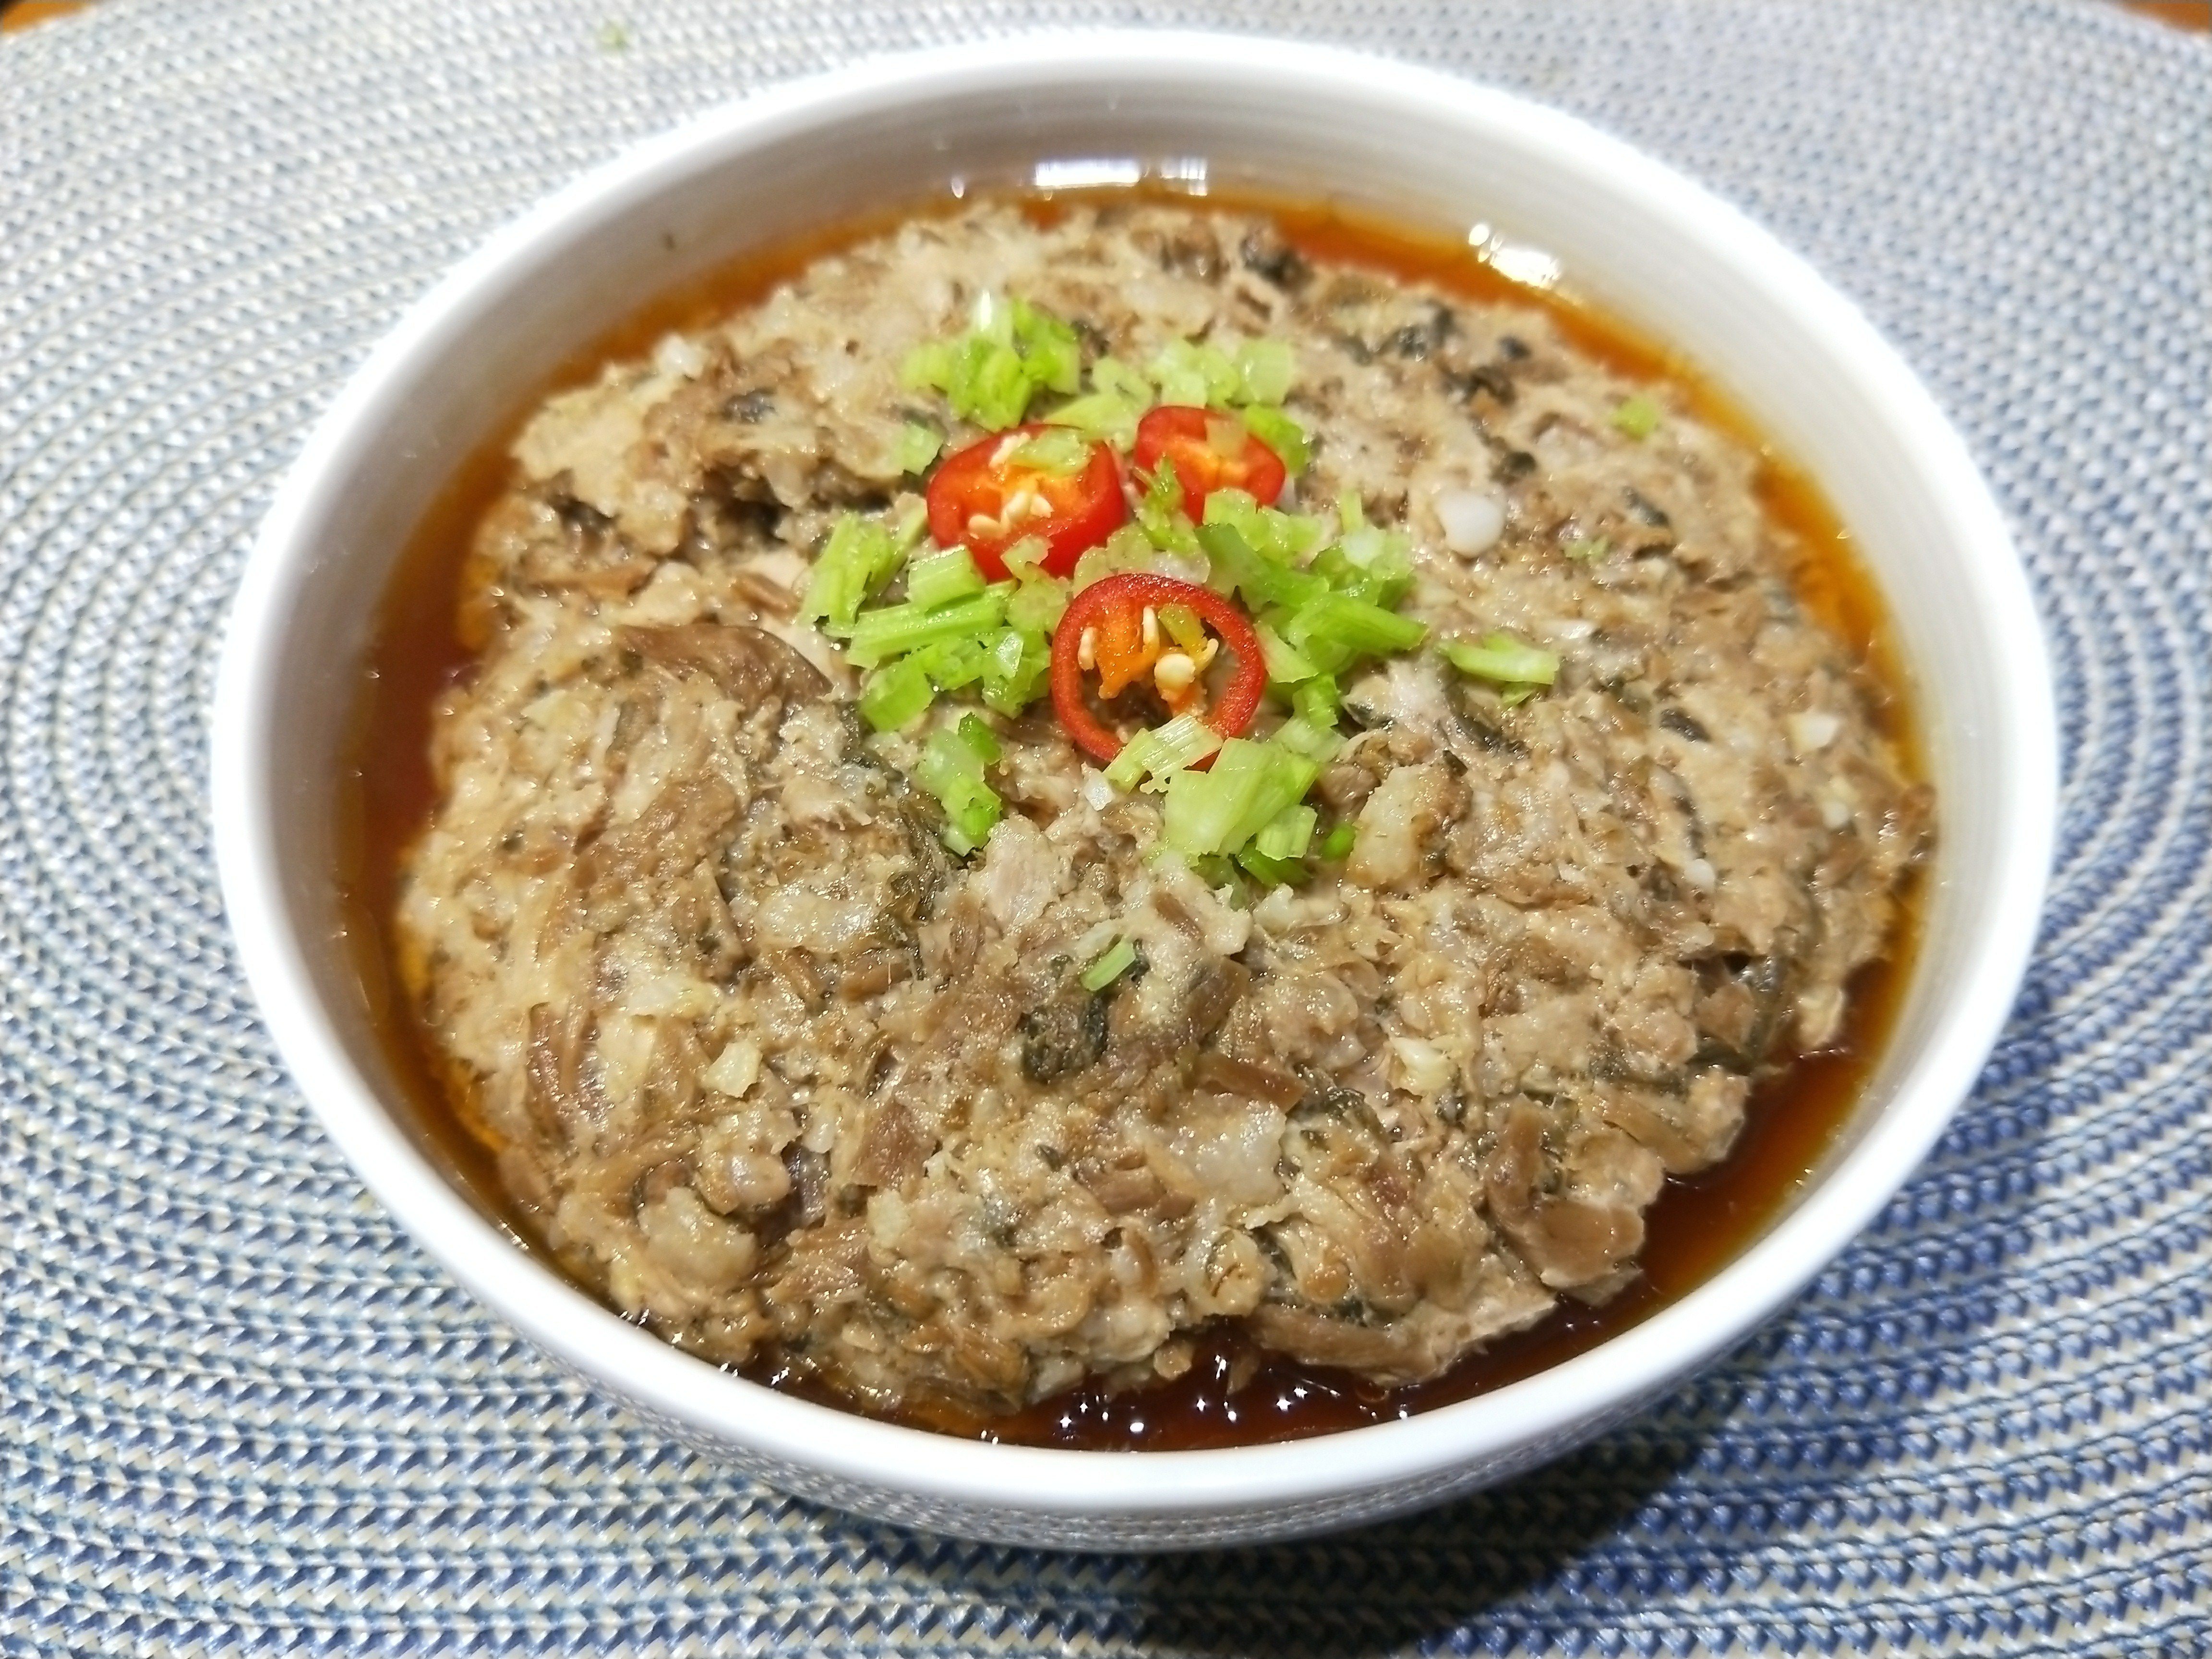 梅菜蒸肉(電鍋料理15分鐘快速上菜) by 甜廚花姐姐 - 愛料理